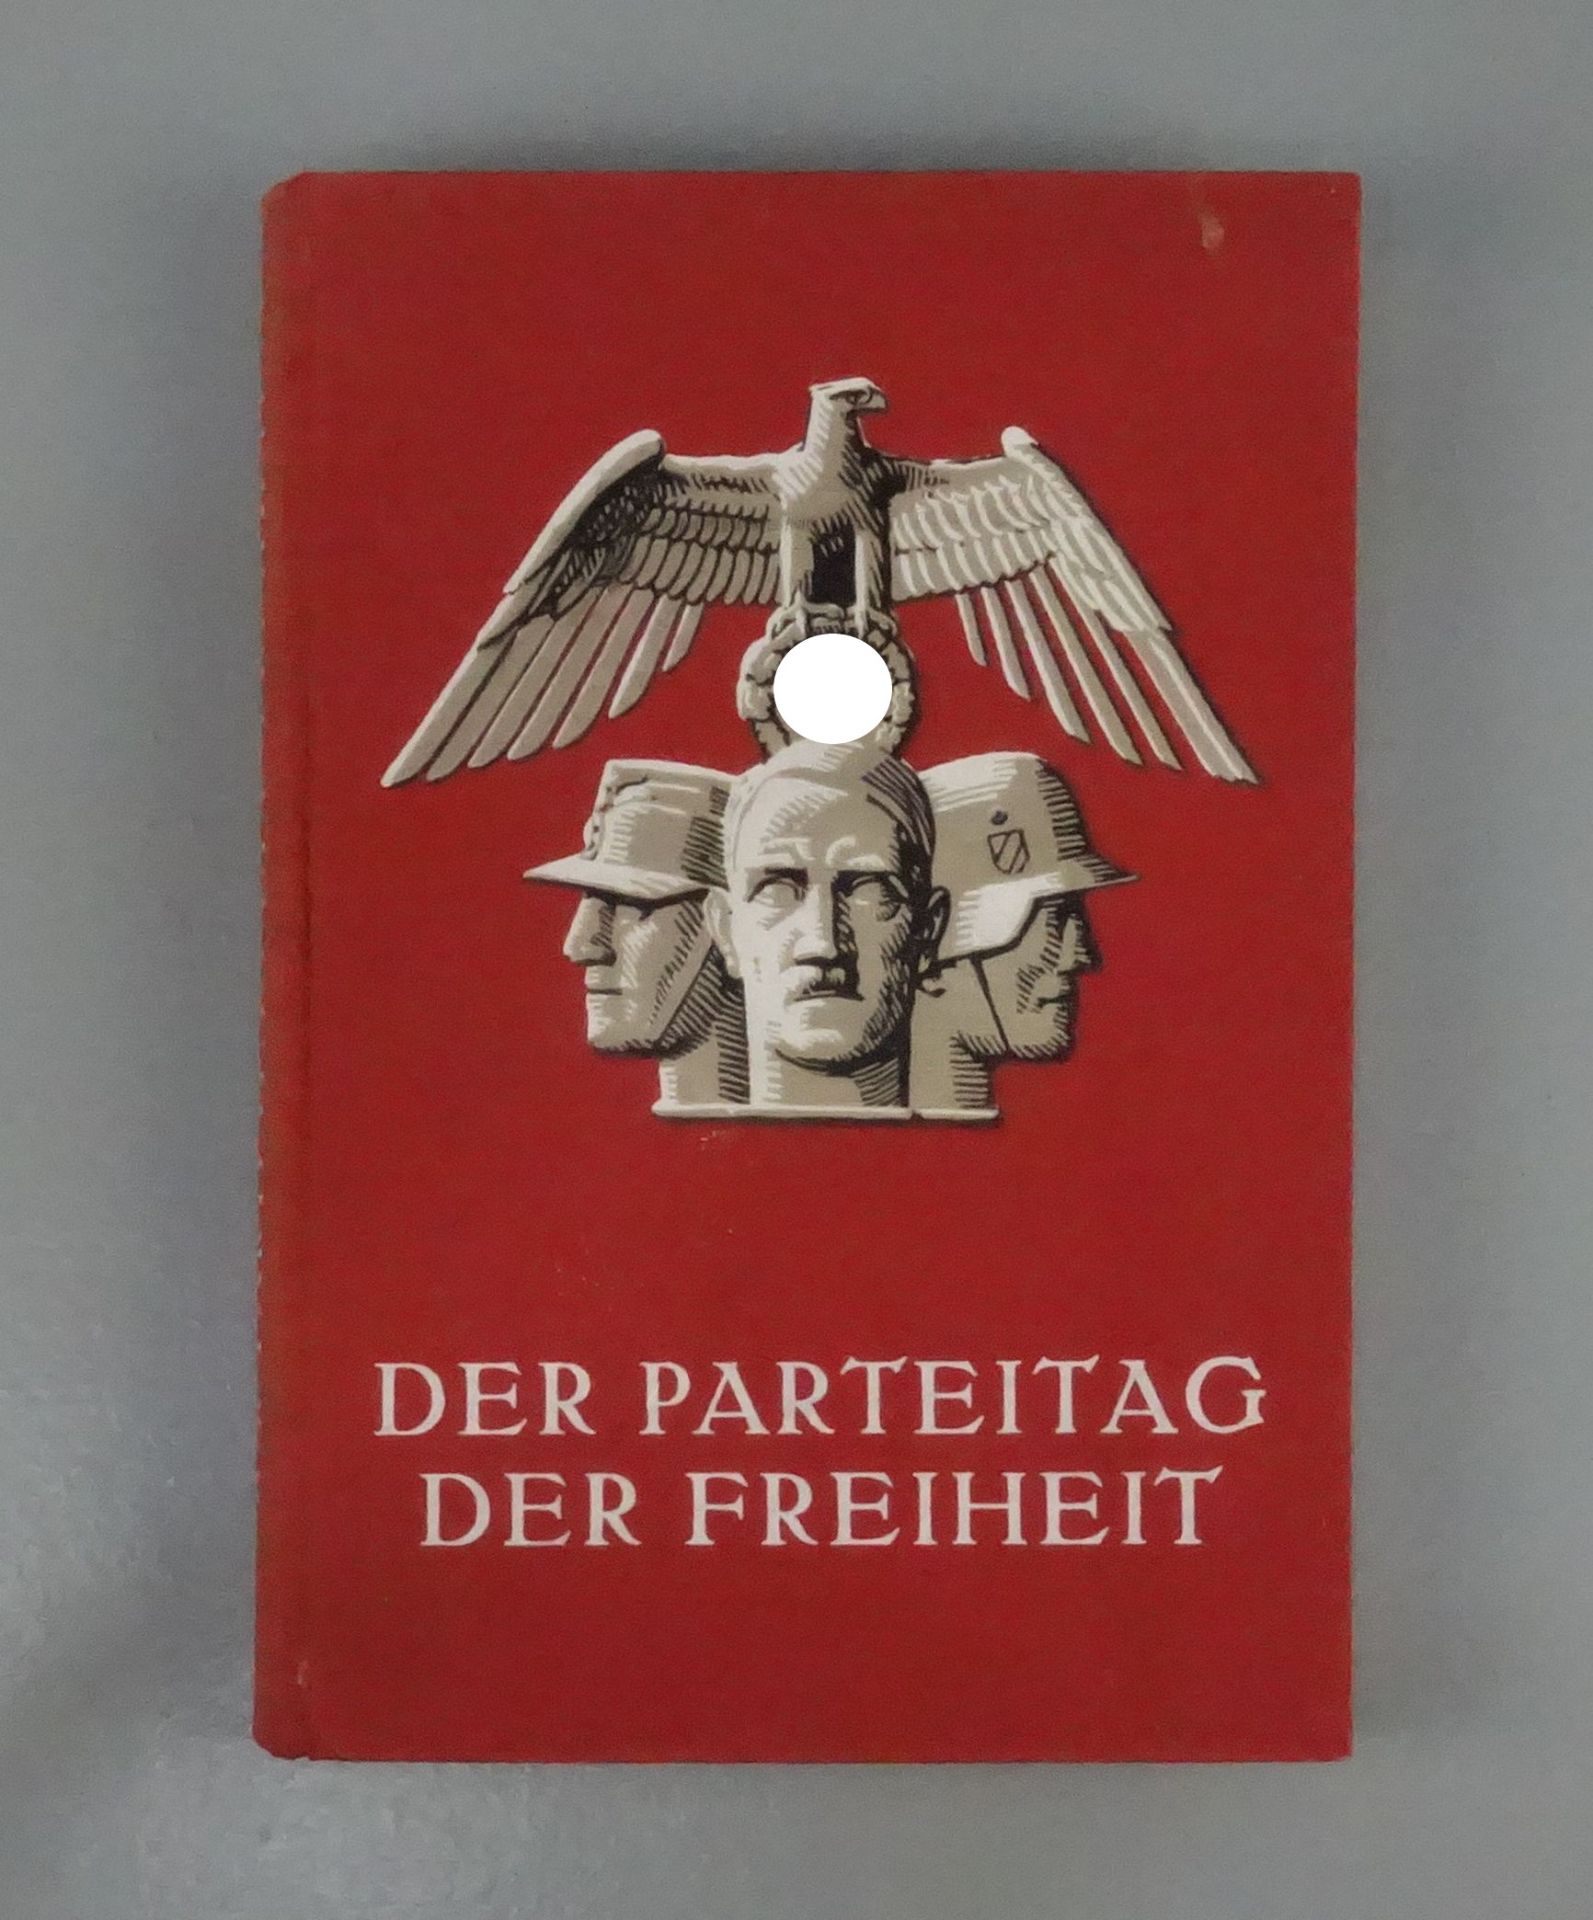 BUCH: "DER PARTEITAG DER FREIHEIT 1935"